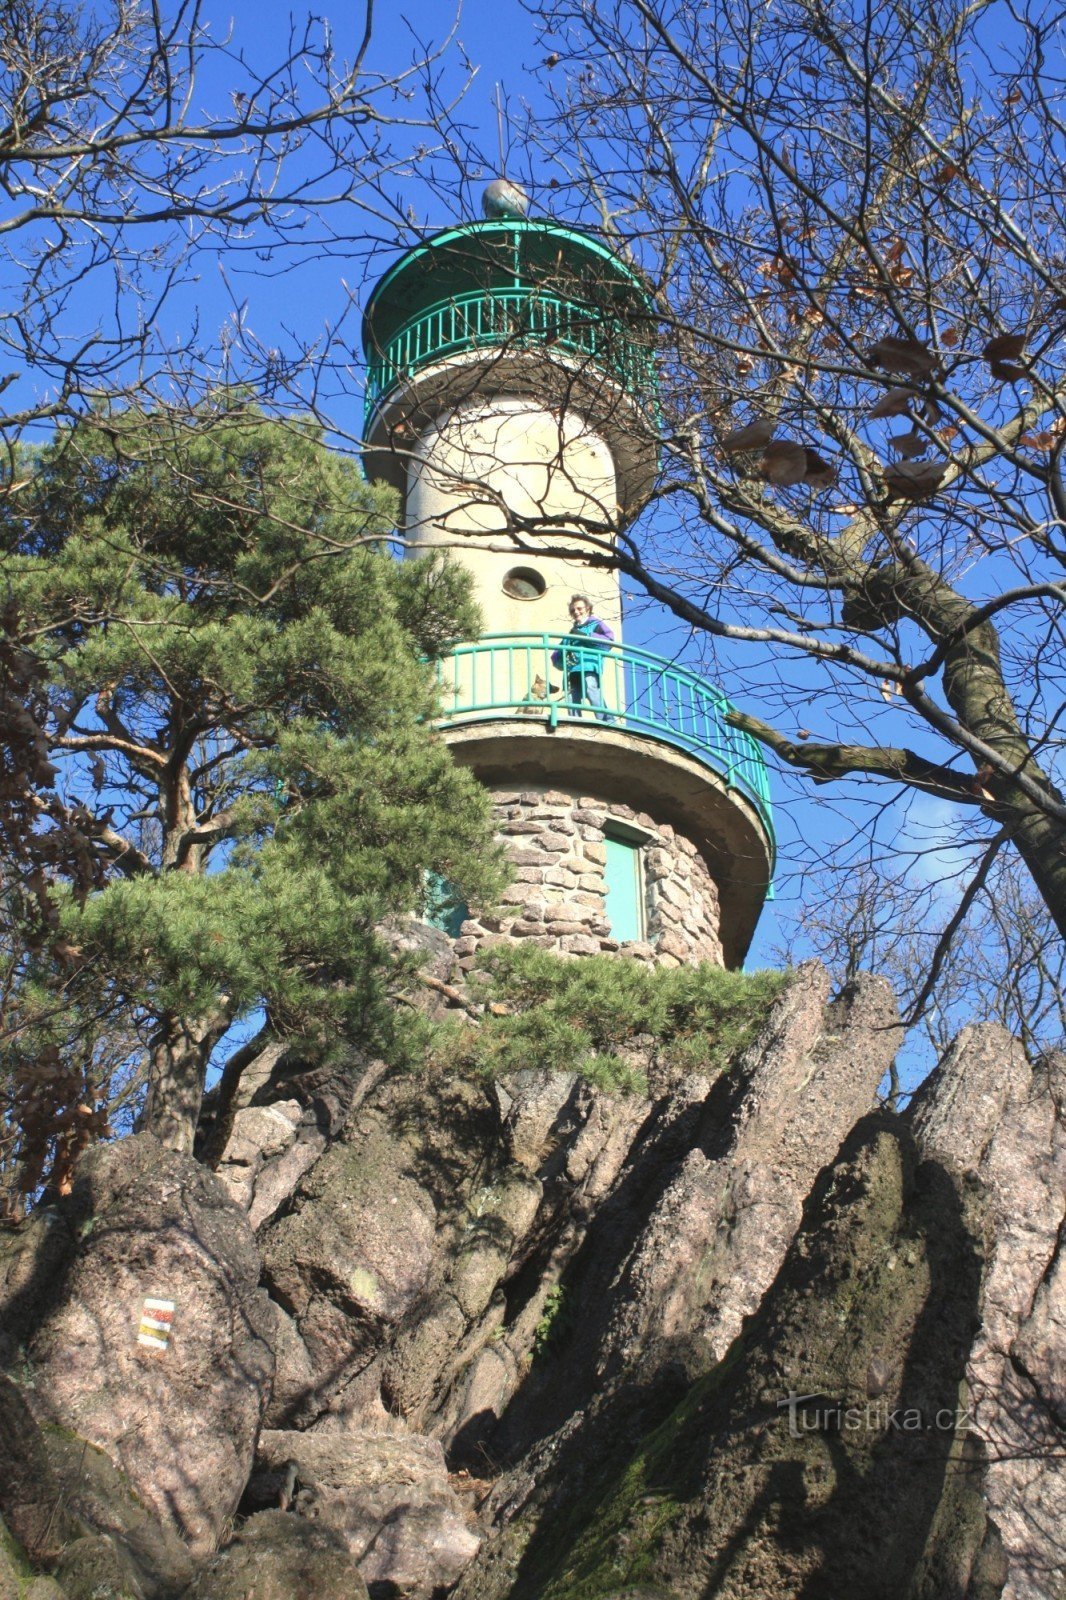 De uitkijktoren bevindt zich op een rotsachtige bergkam